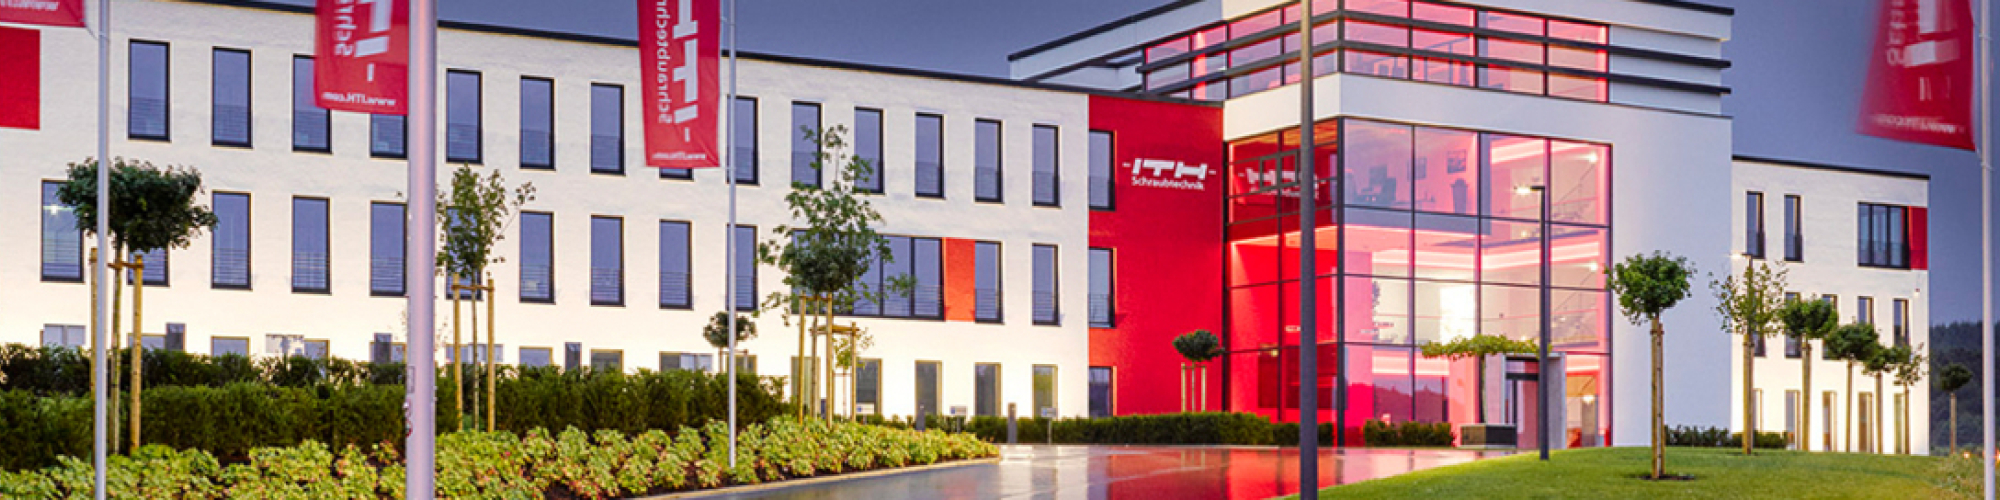 ITH GmbH & Co. KG